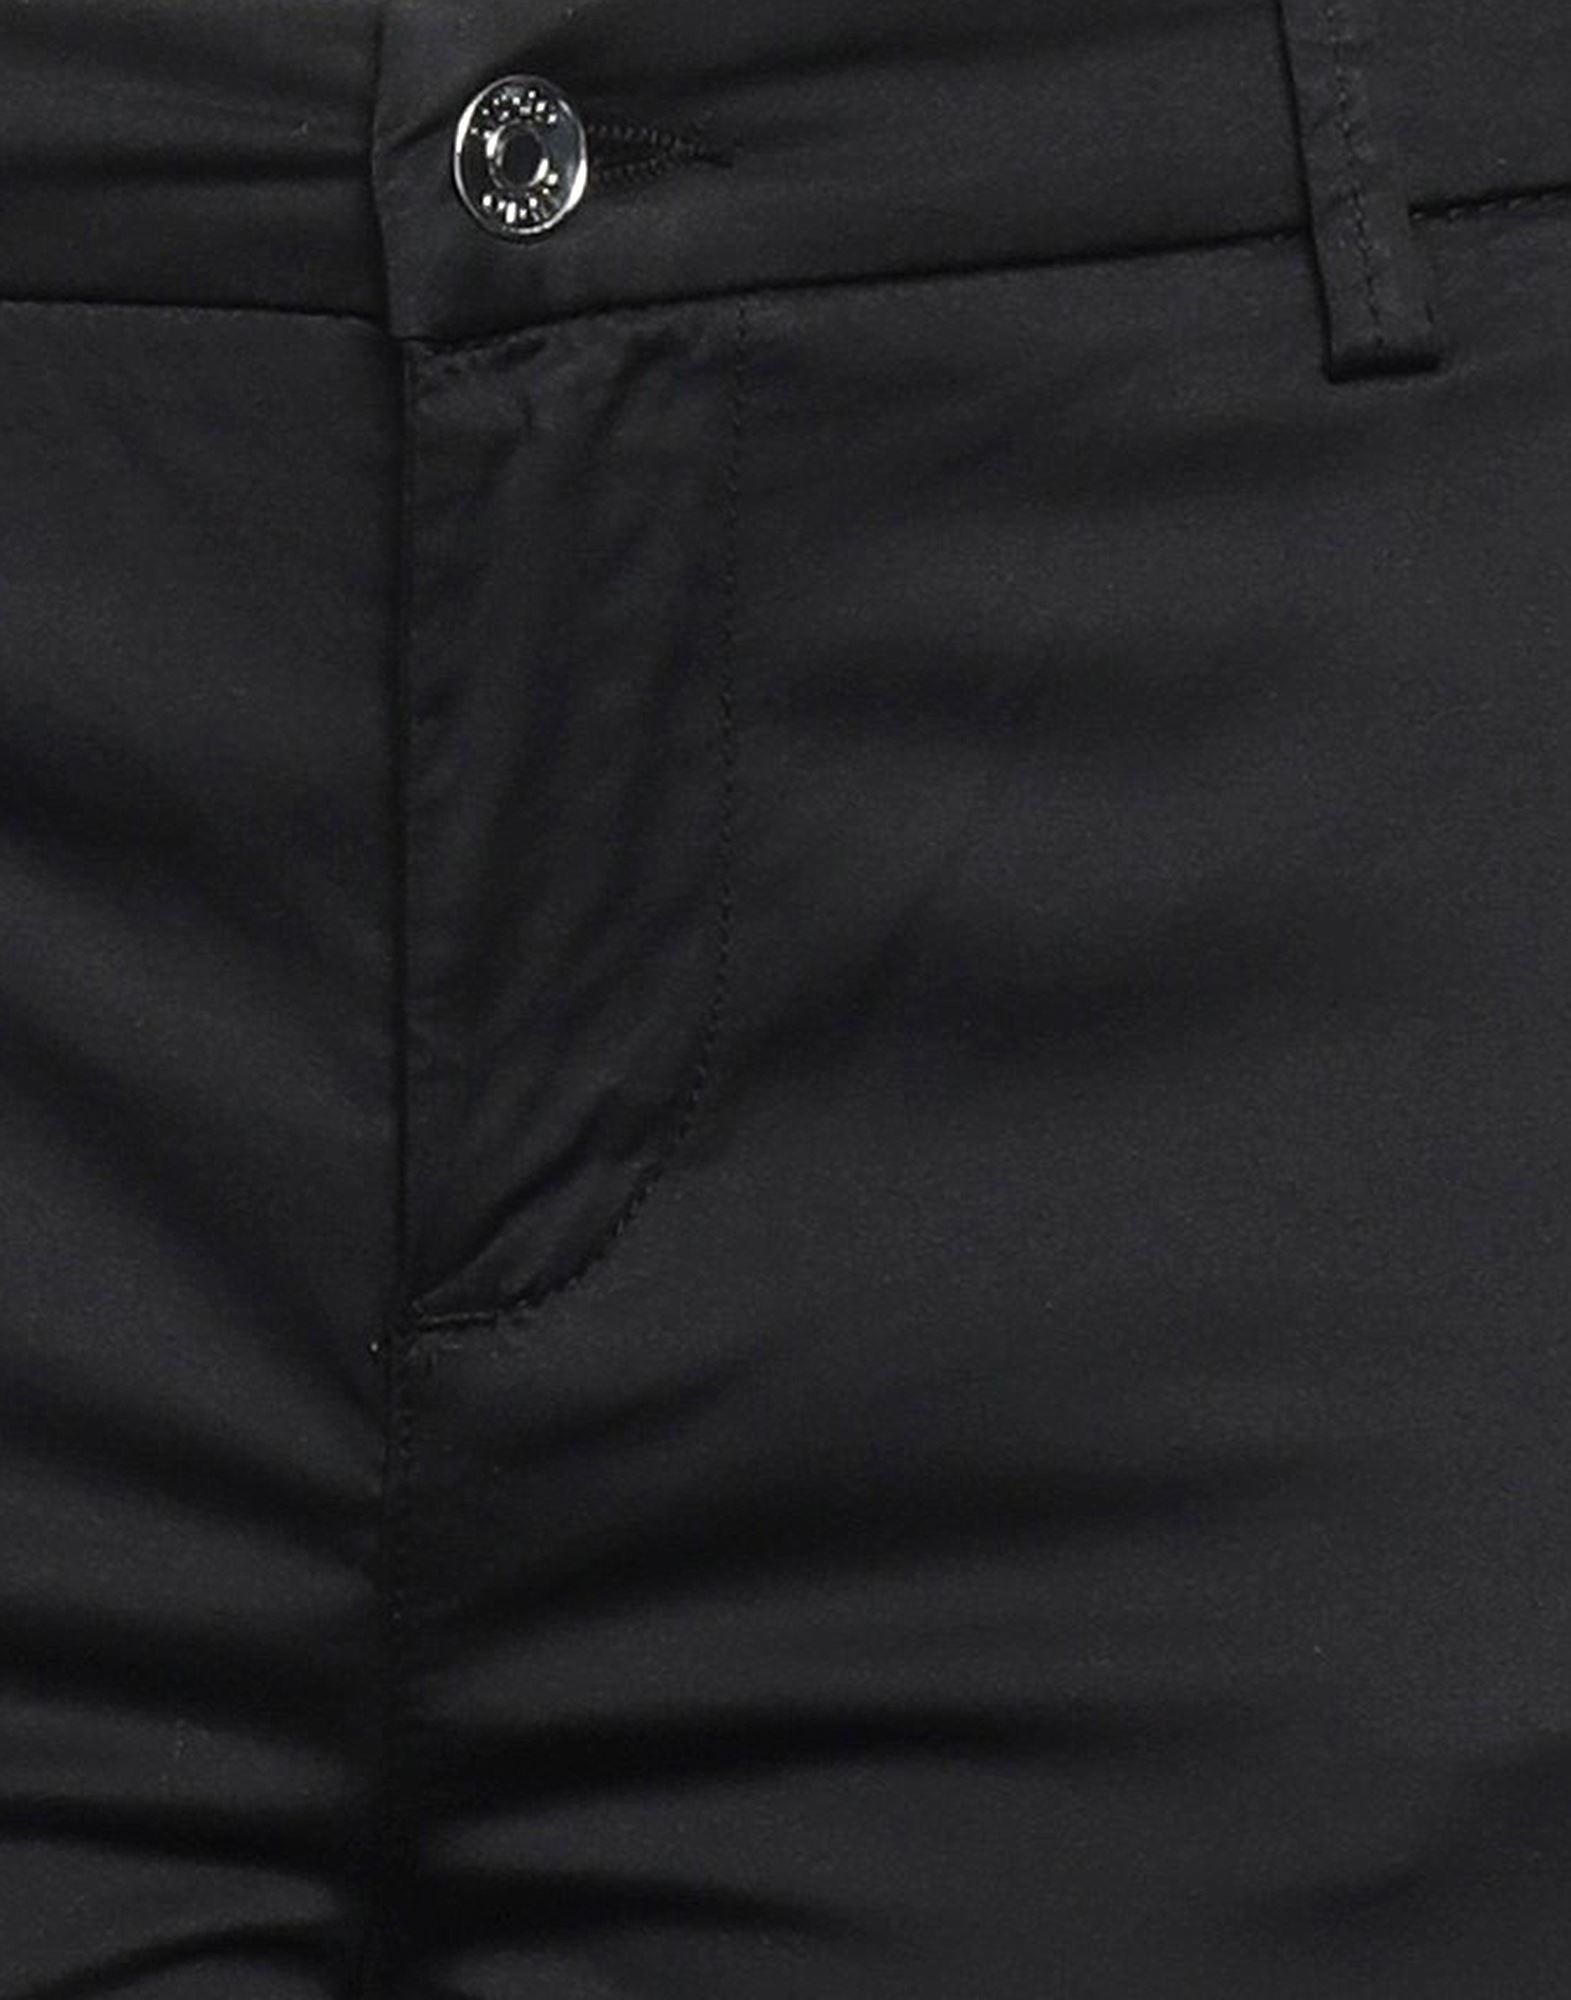 Liu Jo Cropped Trousers in Black | Lyst